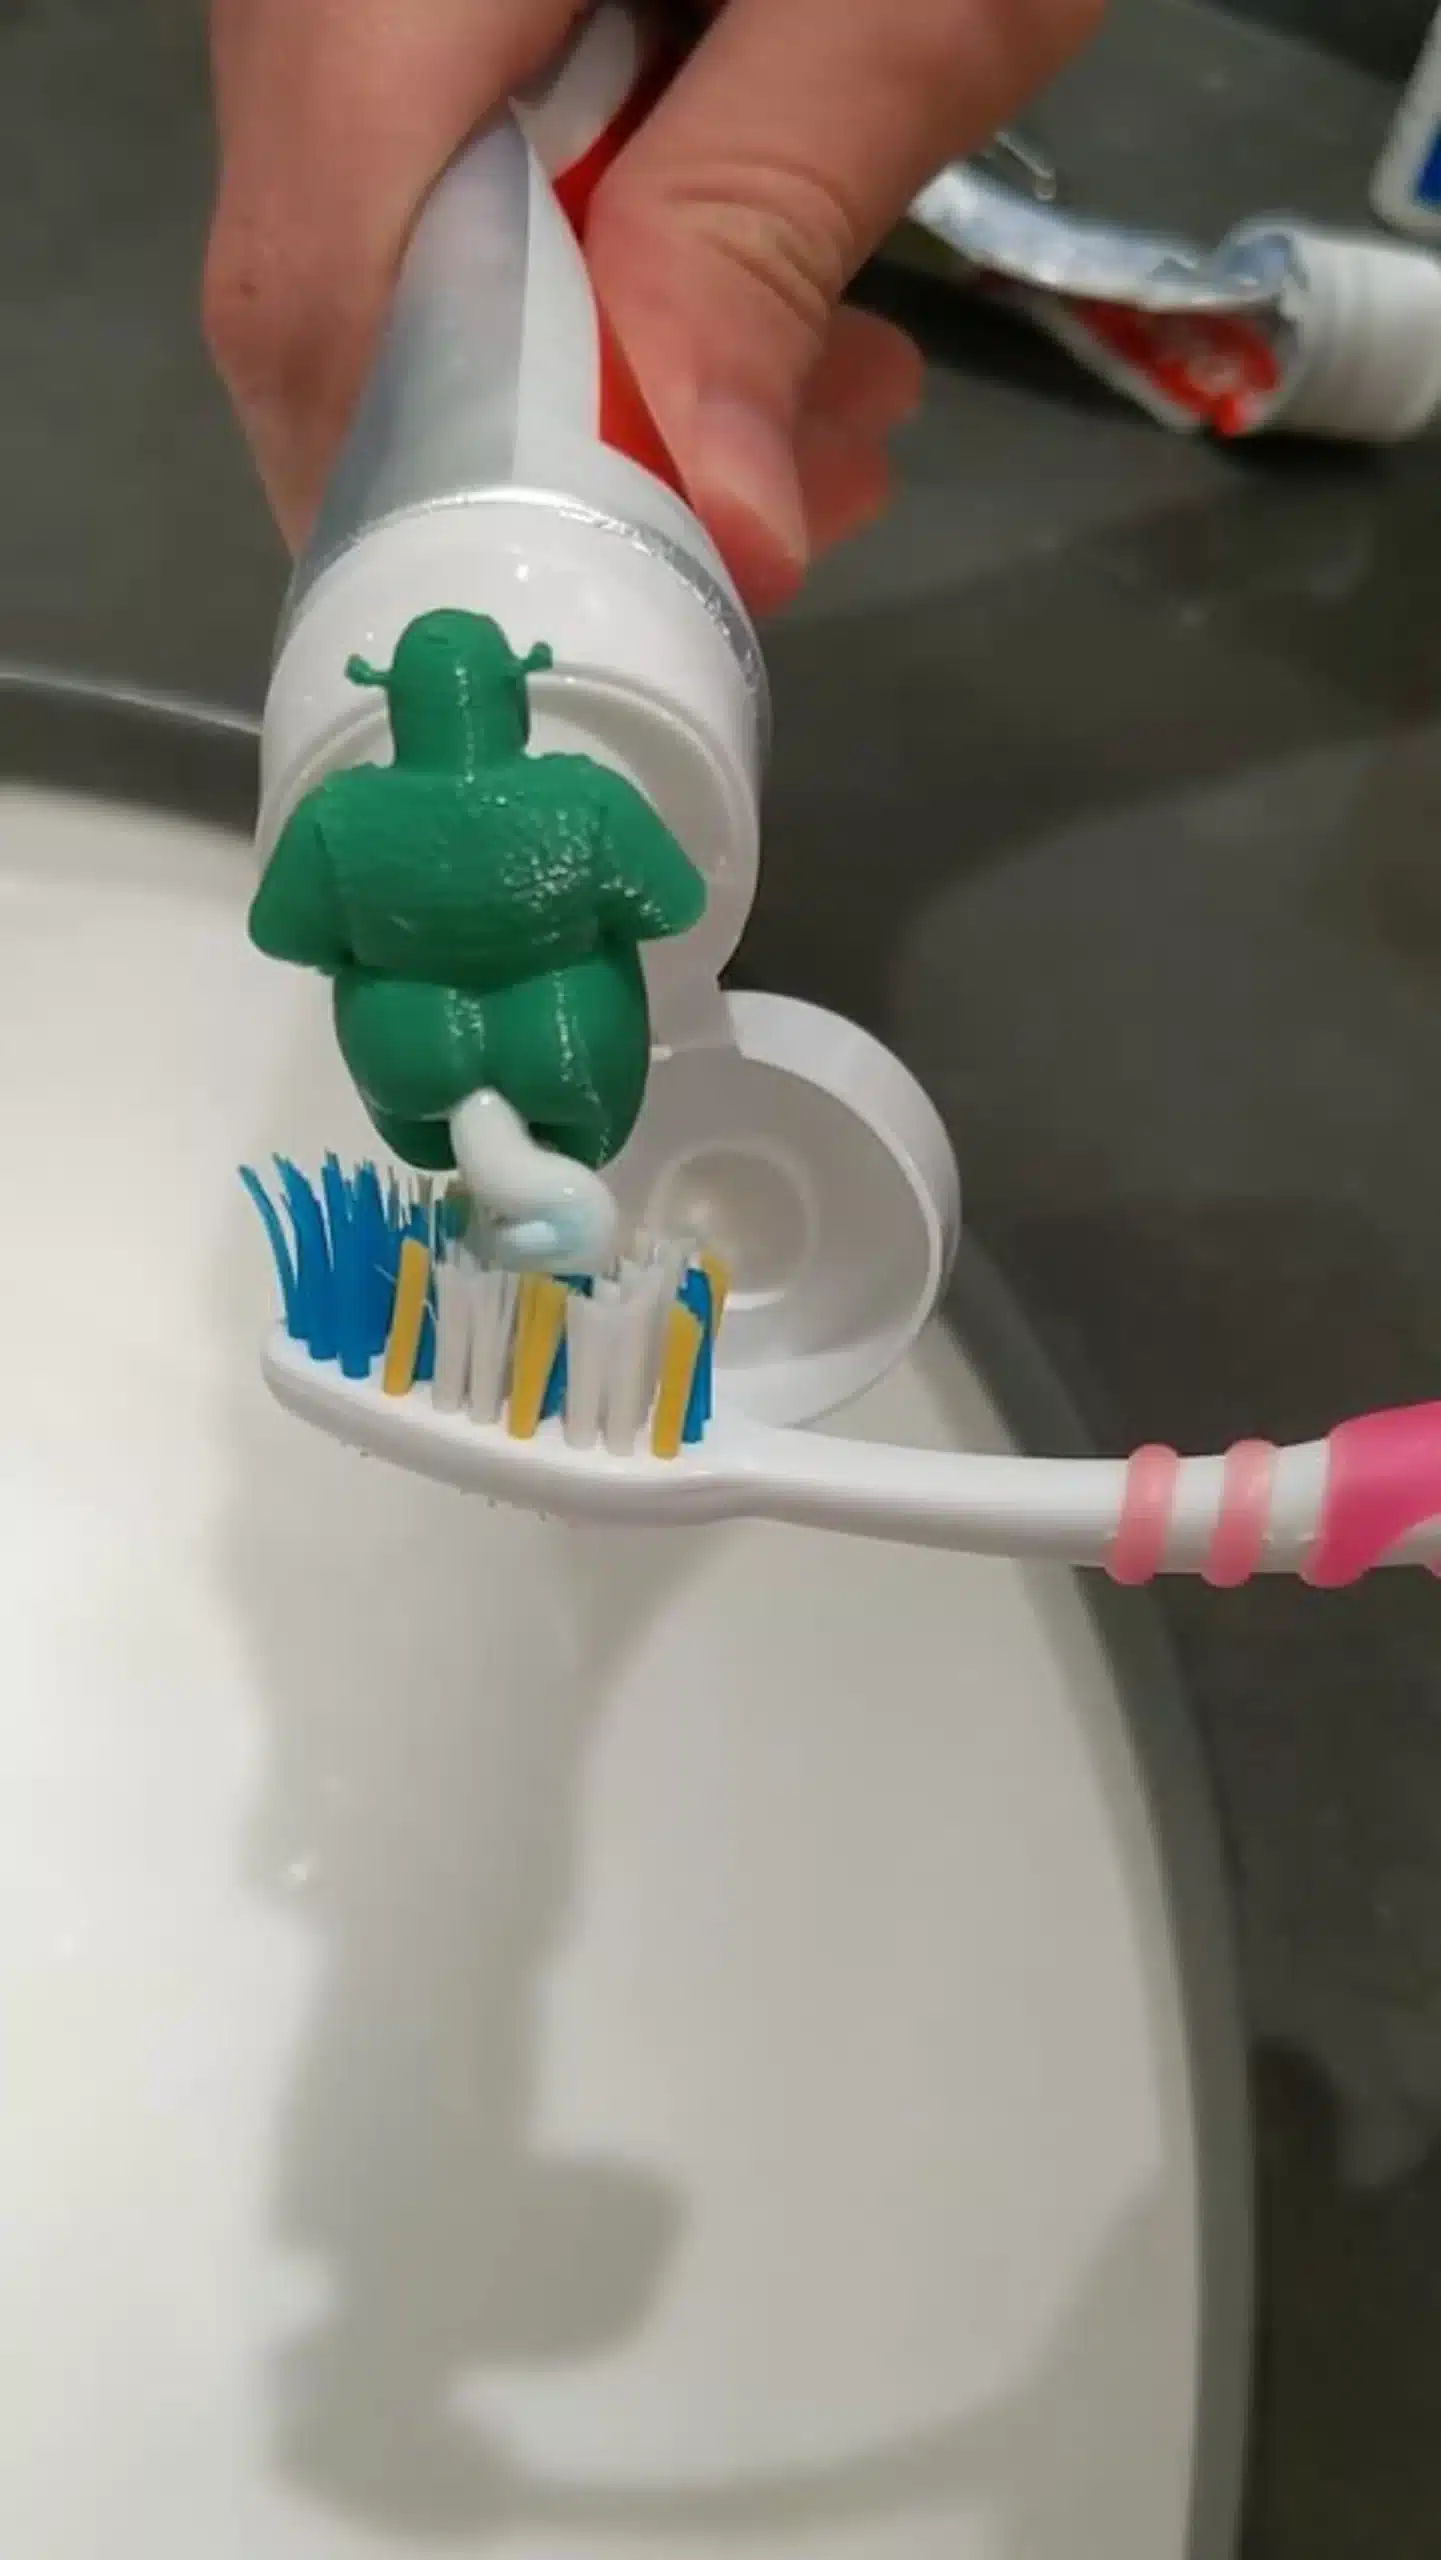 Shrek Pooping Toothpaste Topper